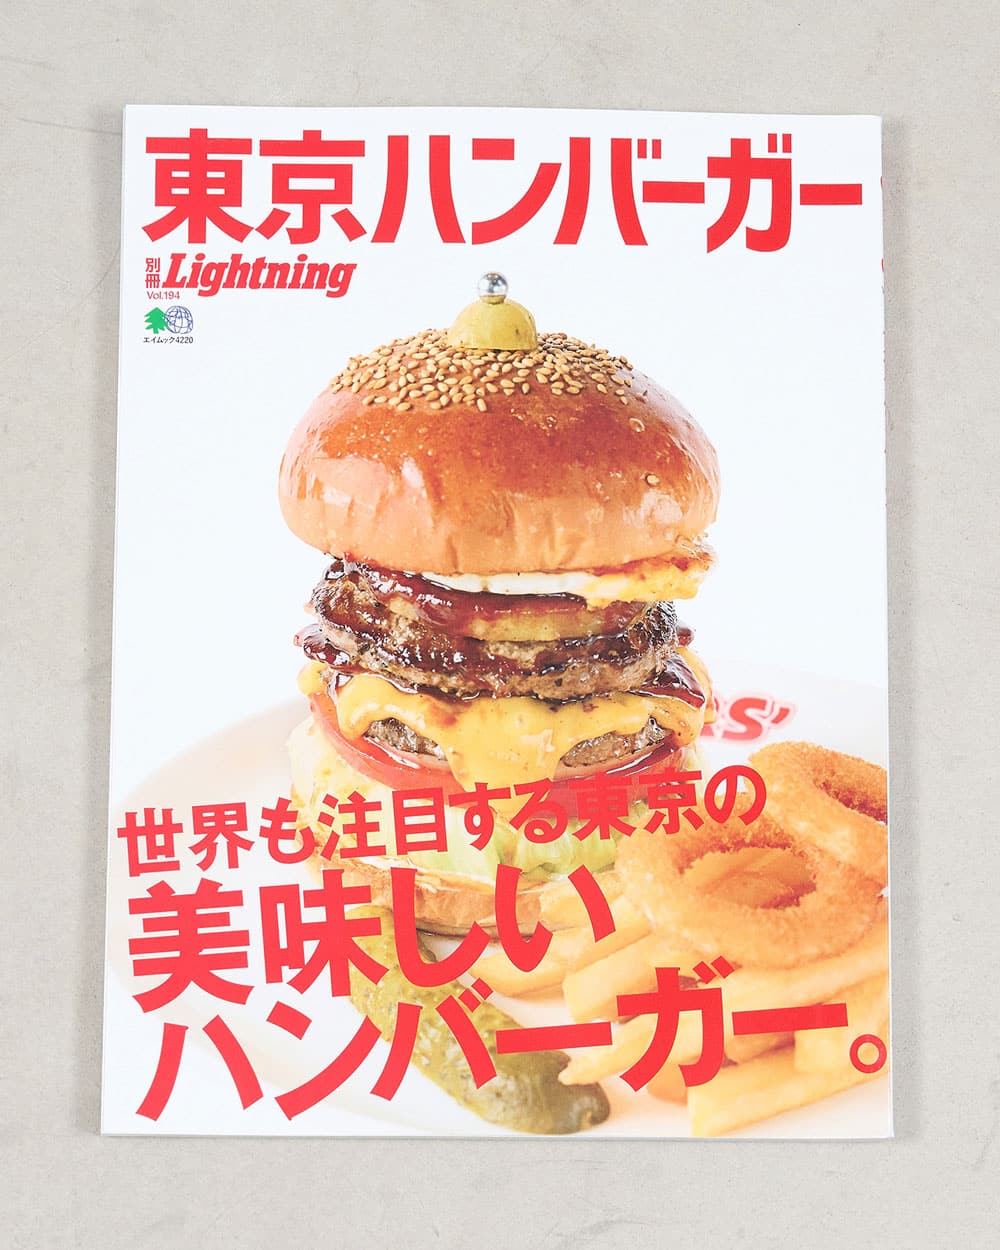 Lightning Archives Tokyo Hamburger